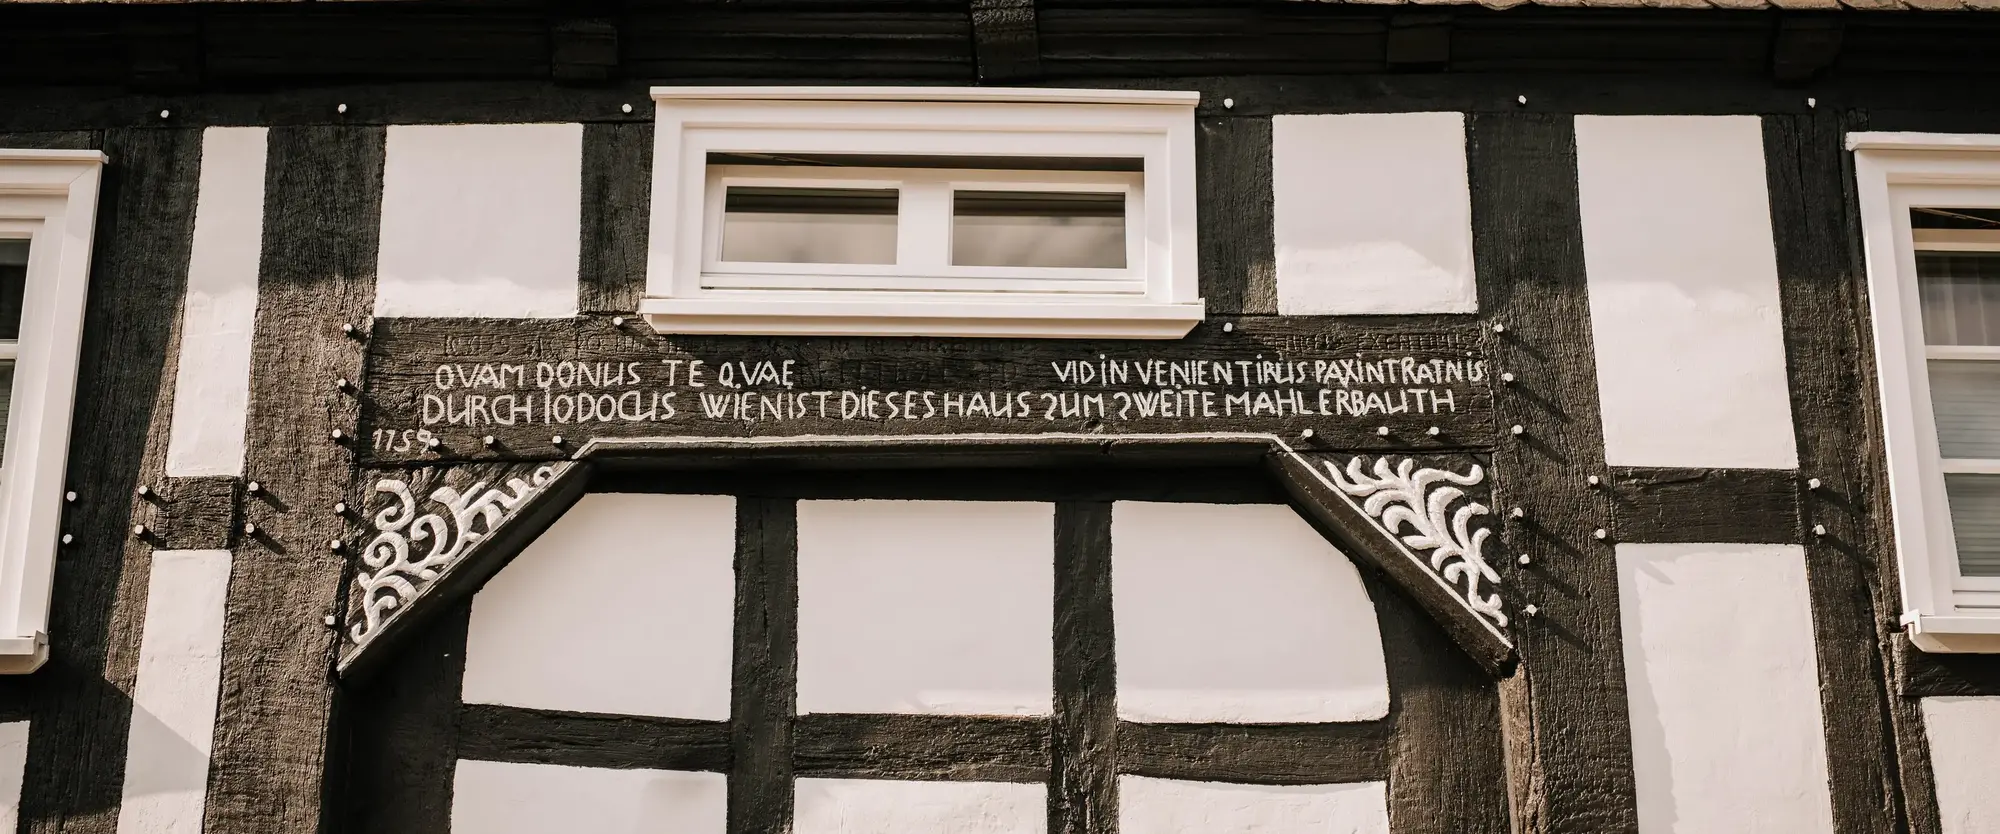 Die Fassade eines Fachwerkhauses mit typischer Inschrift in der Altstadt Winterbergs.